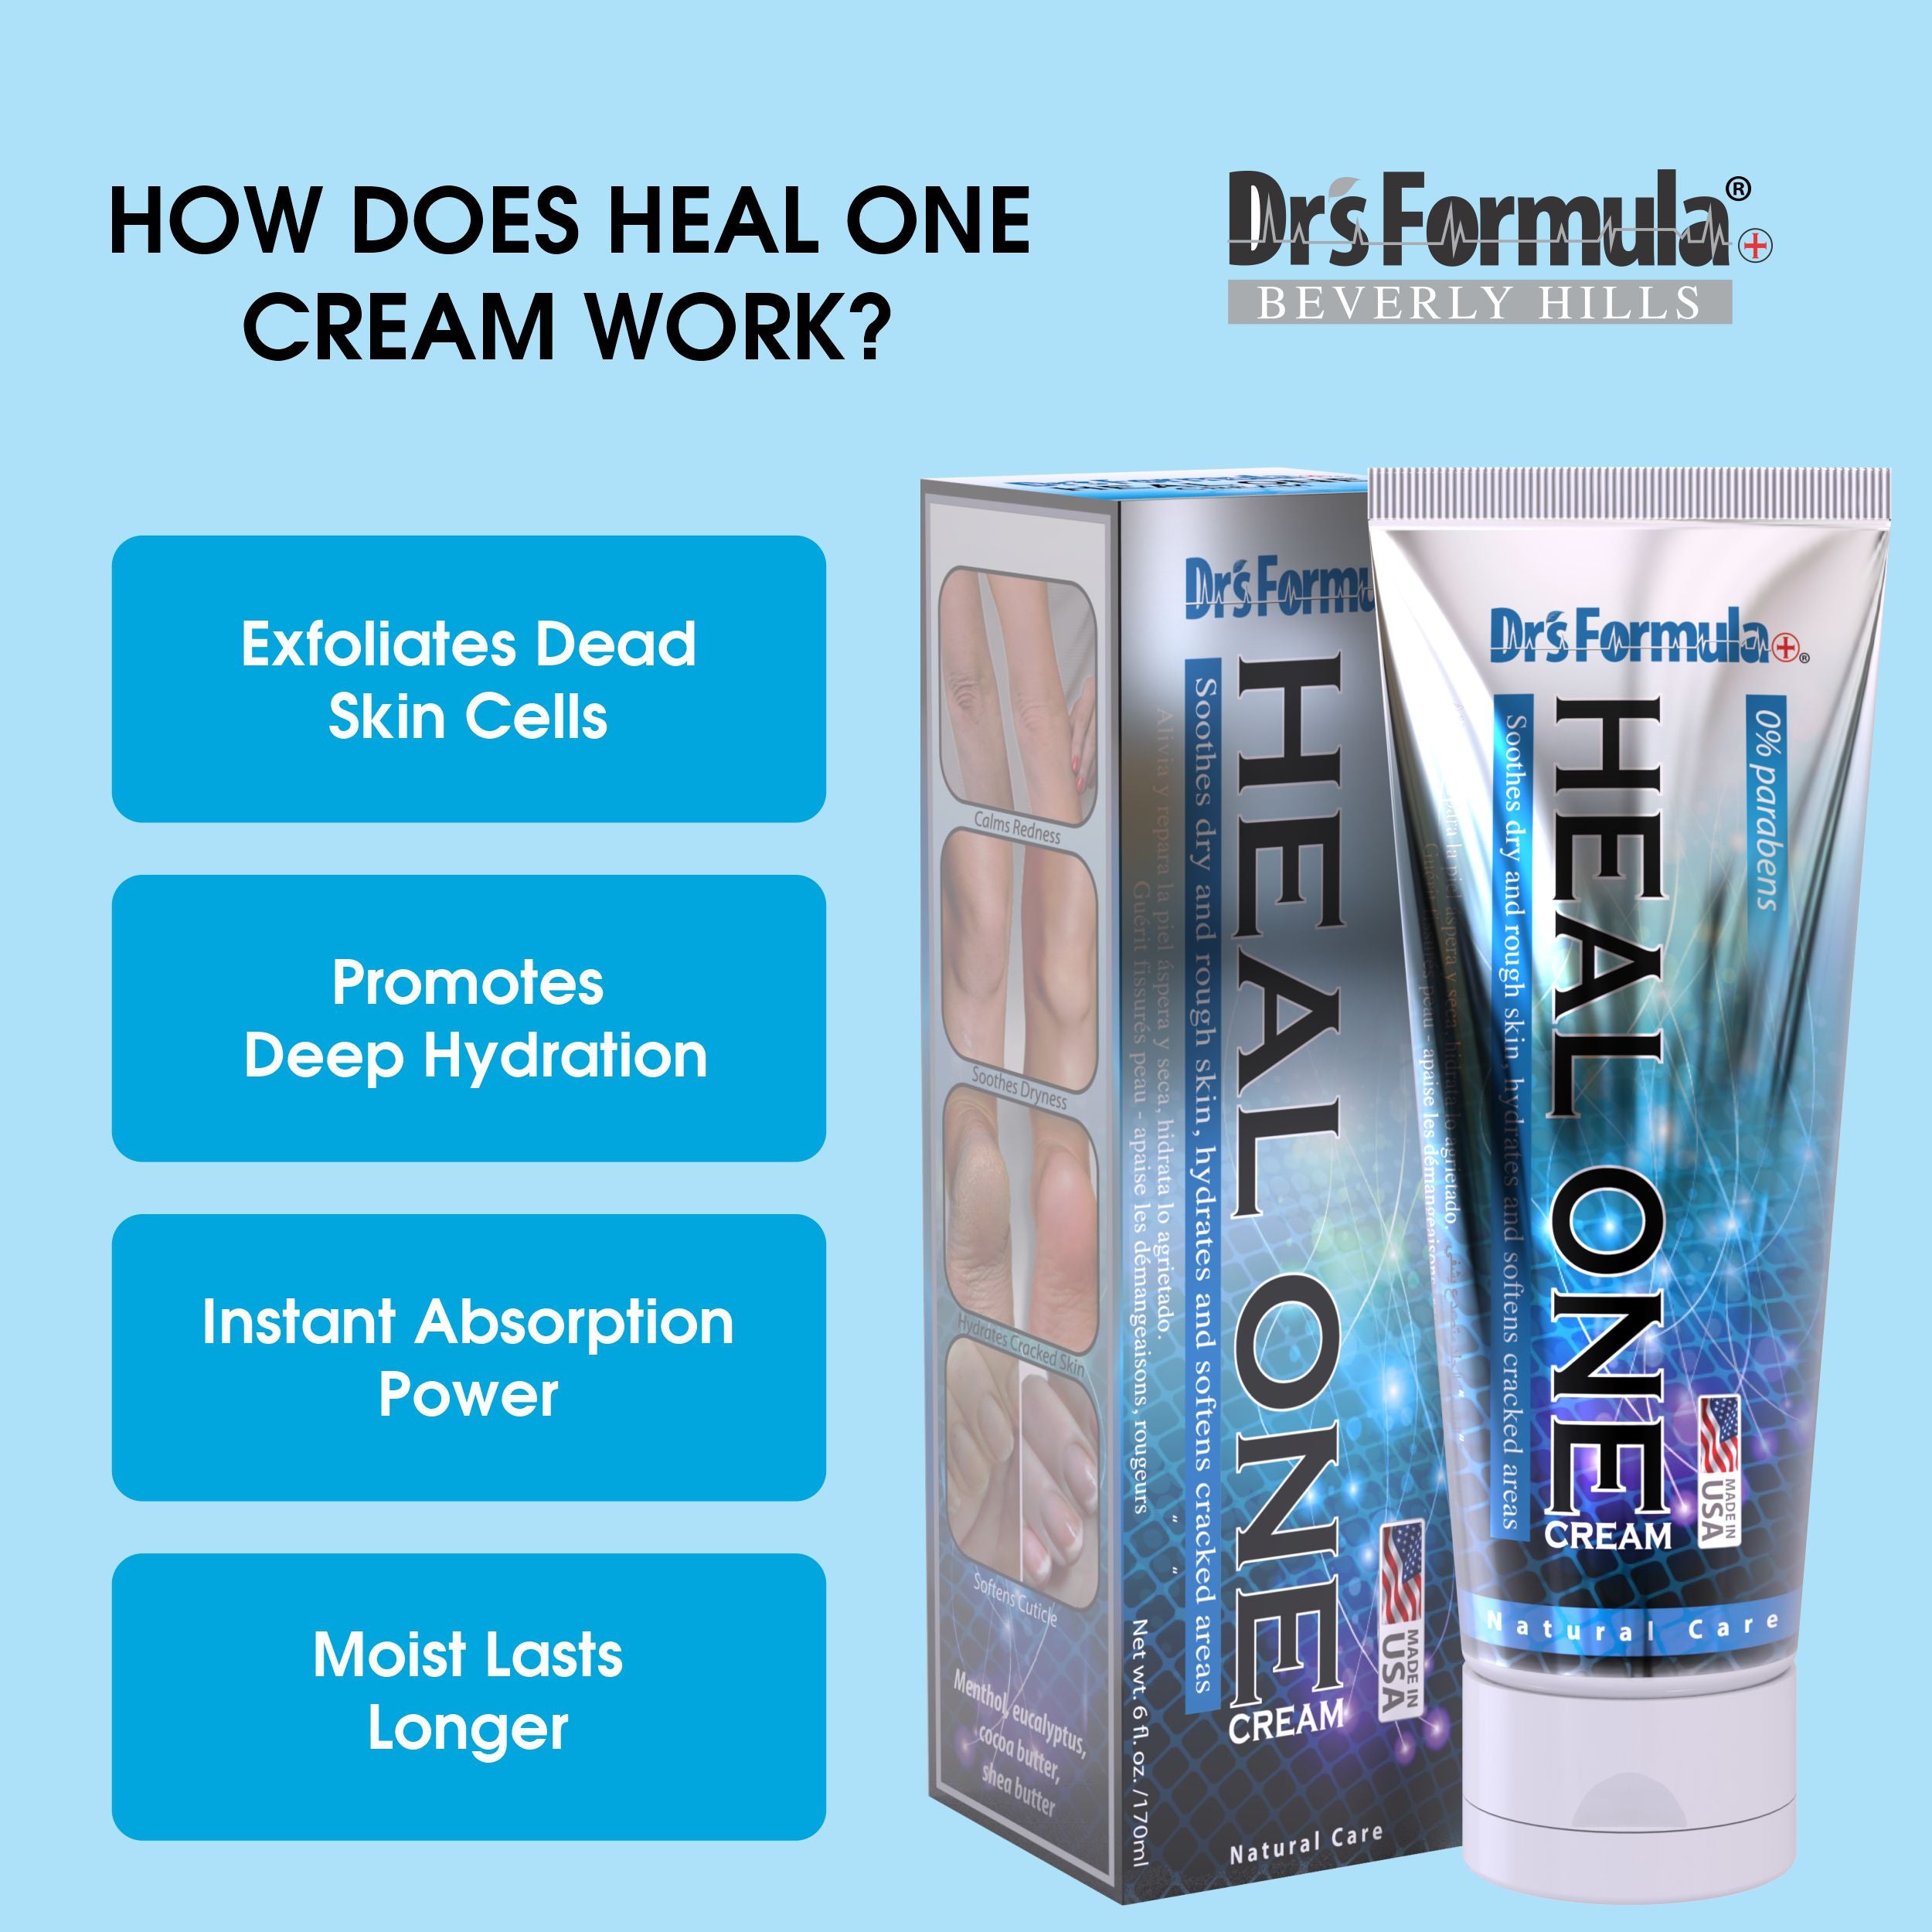 Heal One Cream